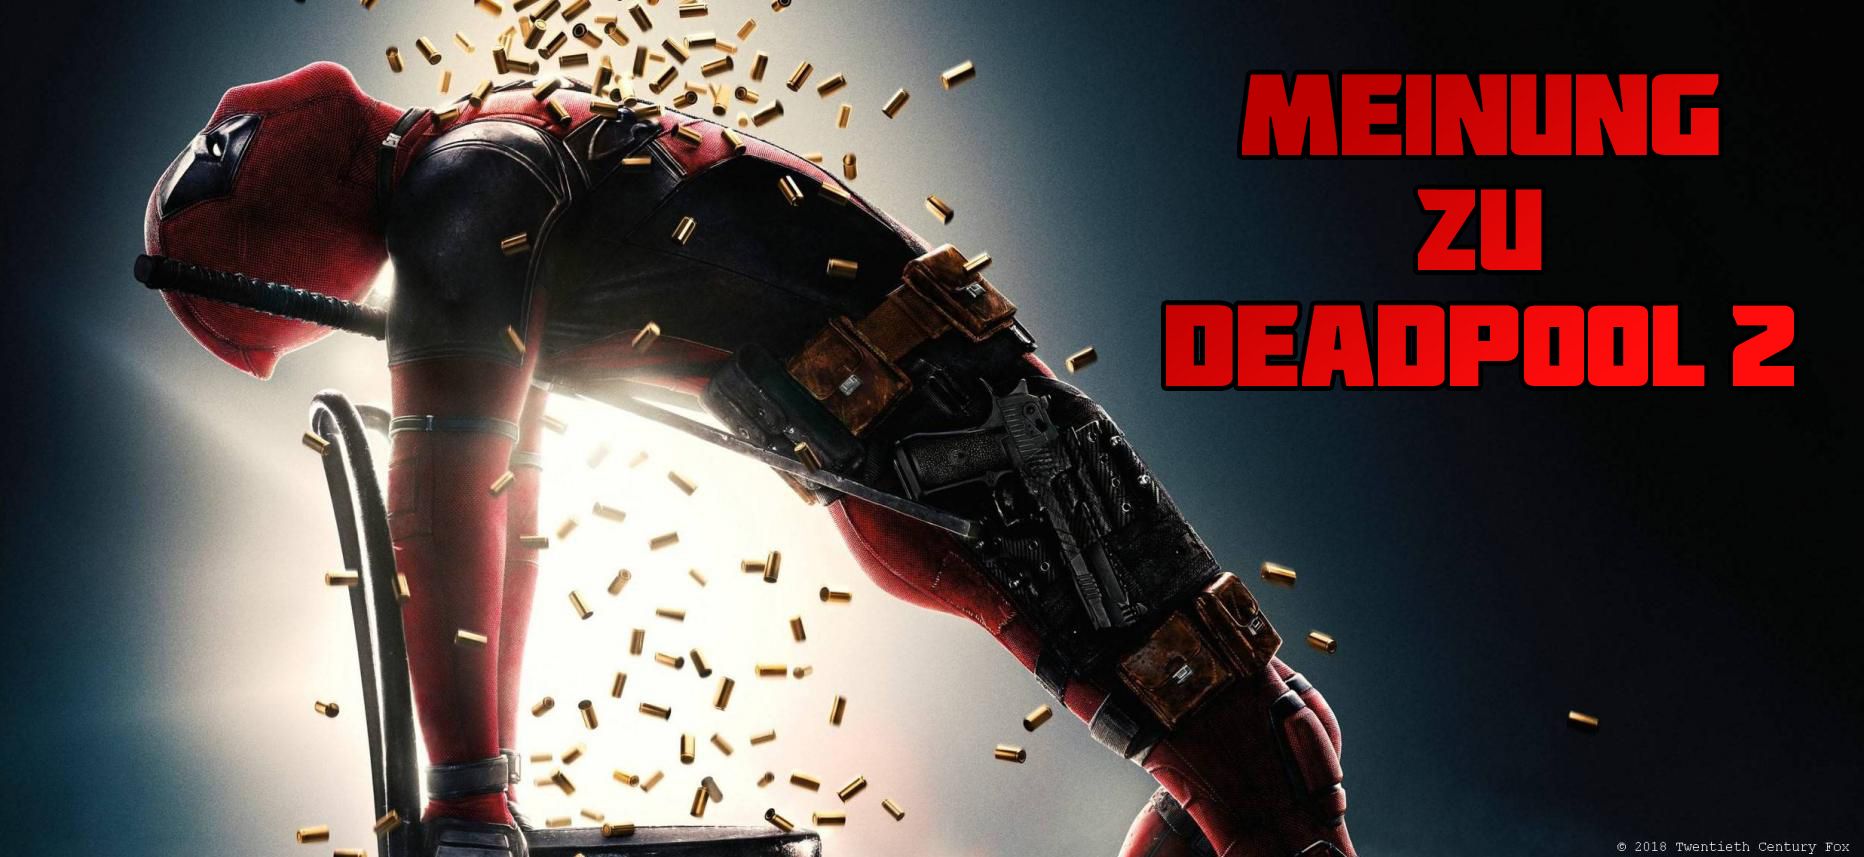 Deadpool_2_Poster_CampC_A4_title-1864x857.jpg